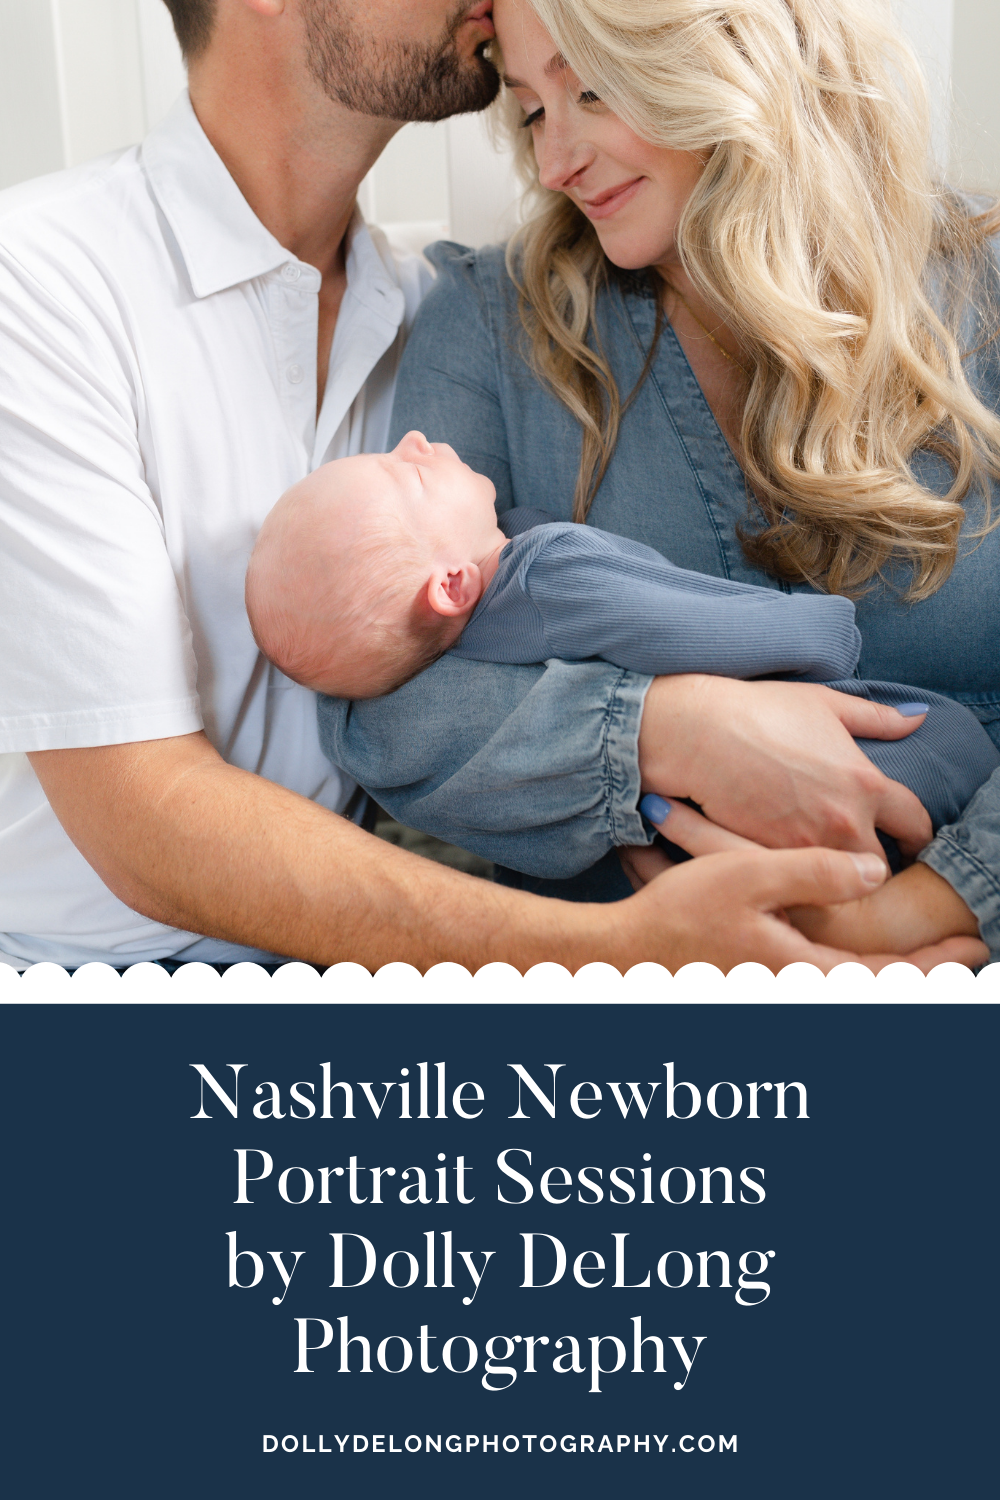 Pinterest_Pin_Image_for_Nashville_Newborn_Photographer_Dolly_DeLong